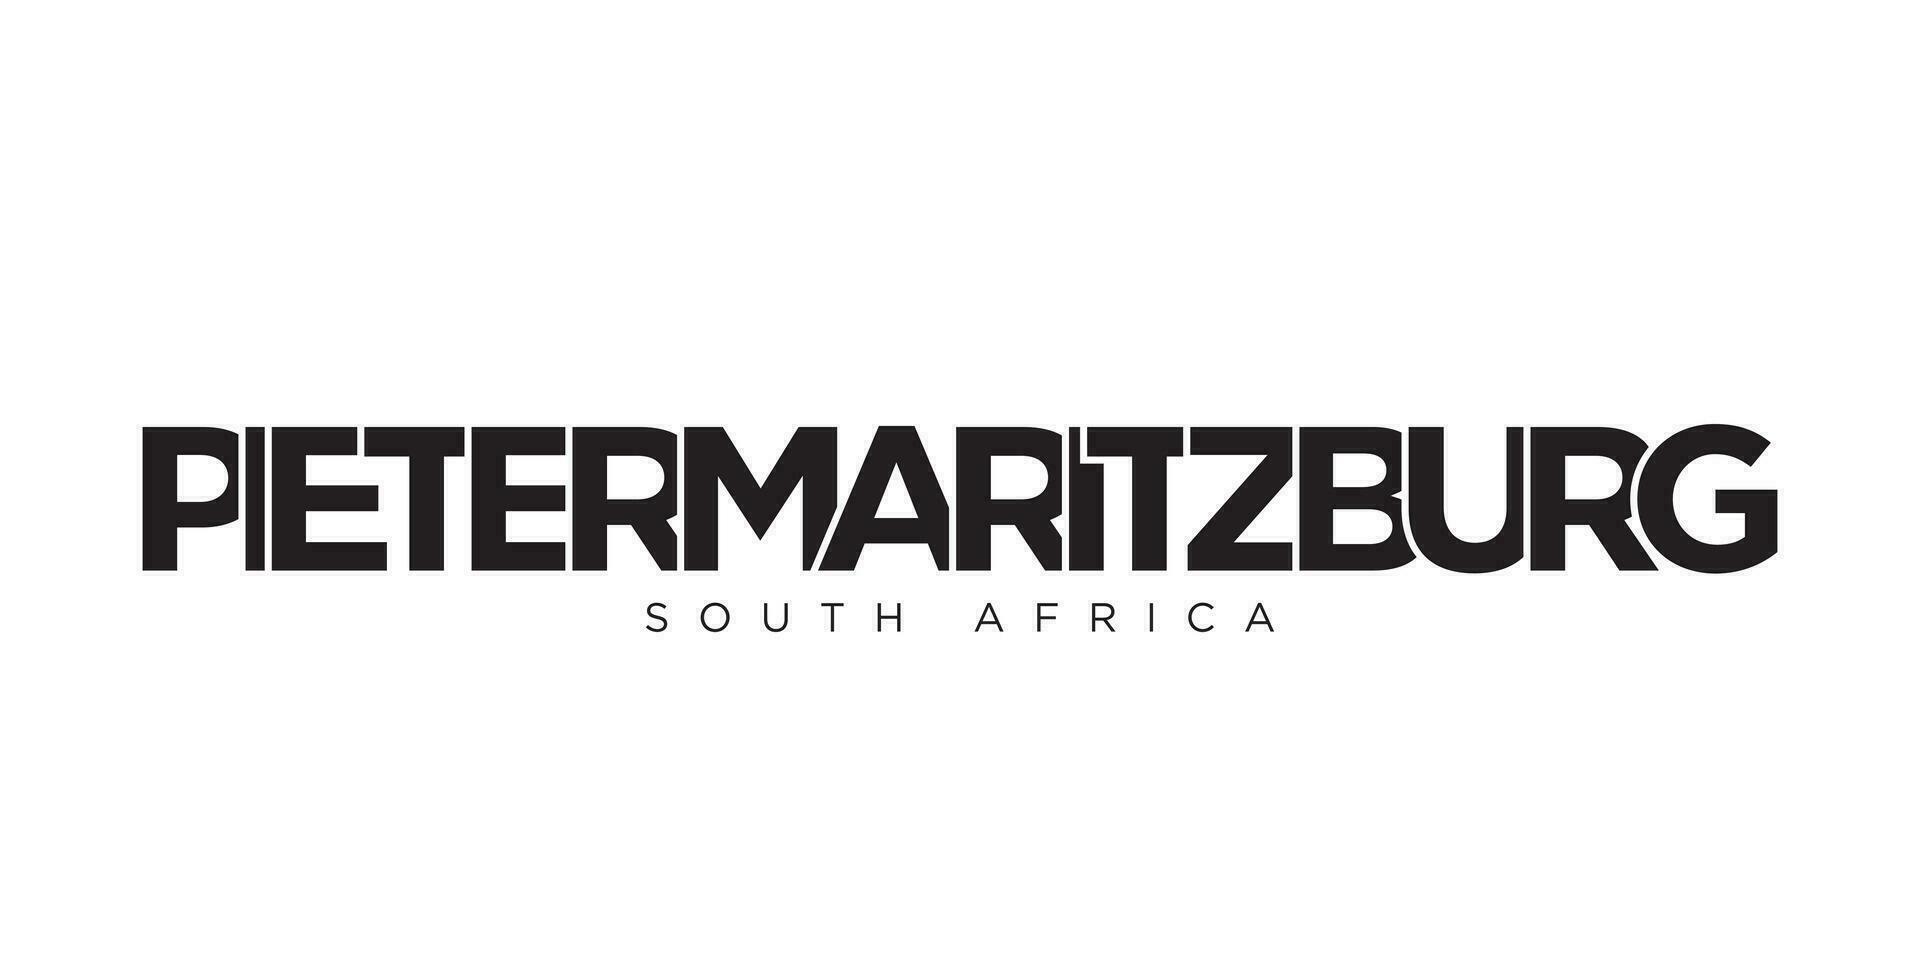 Pietermaritzburg dans le Sud Afrique emblème. le conception Caractéristiques une géométrique style, vecteur illustration avec audacieux typographie dans une moderne Police de caractère. le graphique slogan caractères.